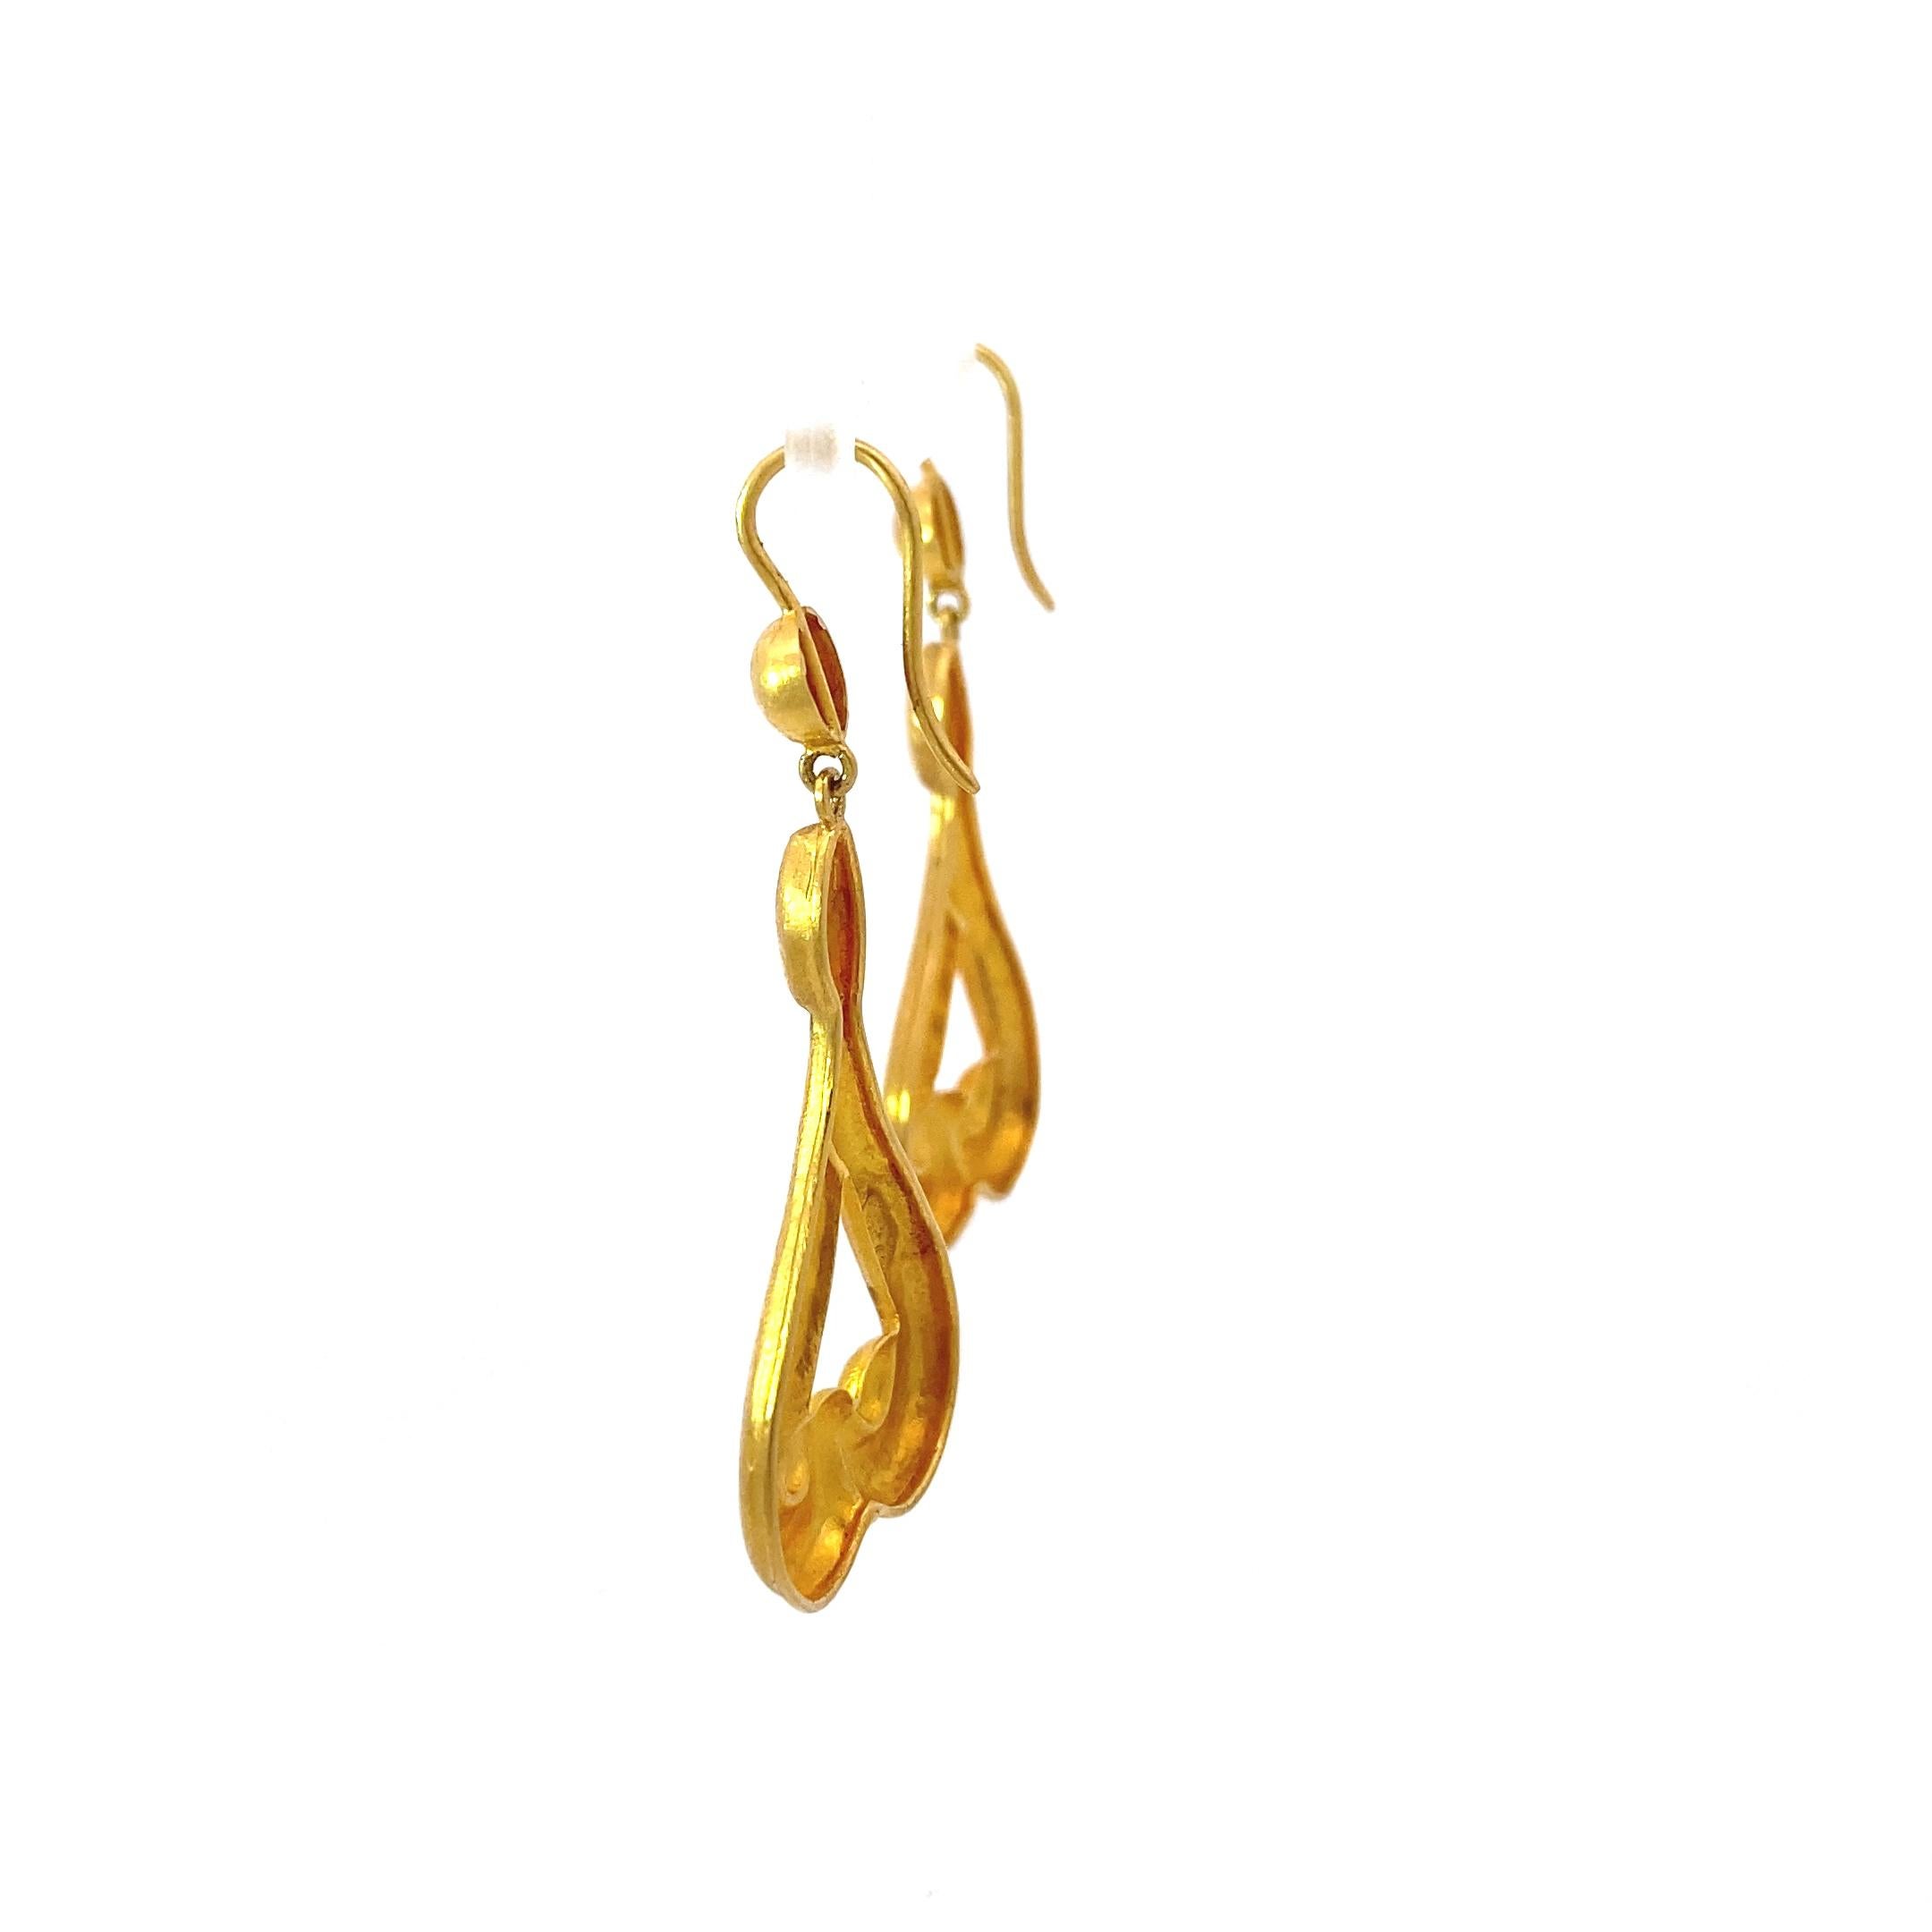 Ikonische Ohrringe mit griechischen Motiven von Schmuckdesigner Lalaounis. Diese Ohrringe haben ein unglaublich sattes, butterweiches Gelb, das sowohl ein viel höheres Karat Gold als auch antike Schmuckstücke imitiert. 

Die verschnörkelte,